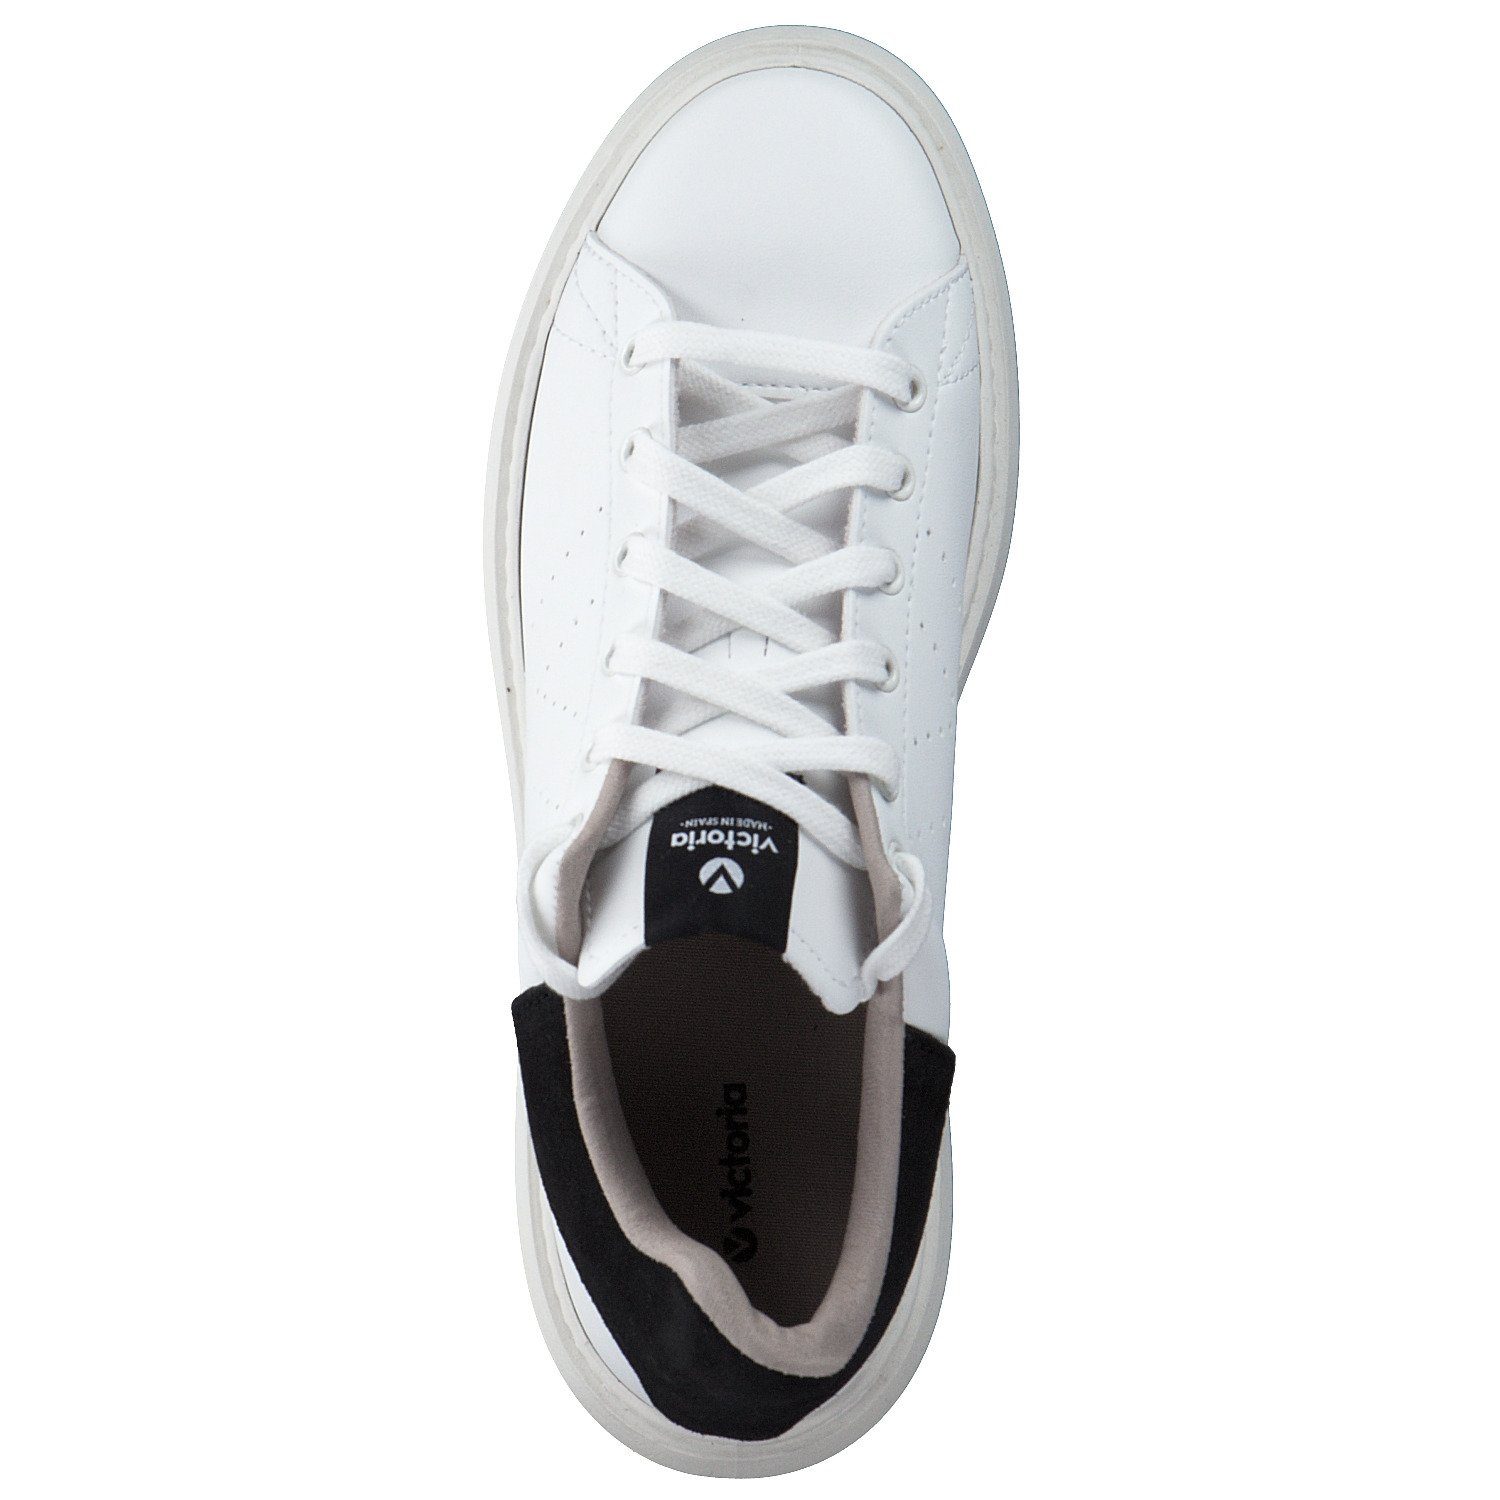 Victoria Viktoria 1263101 negro/white (22401003) Sneaker